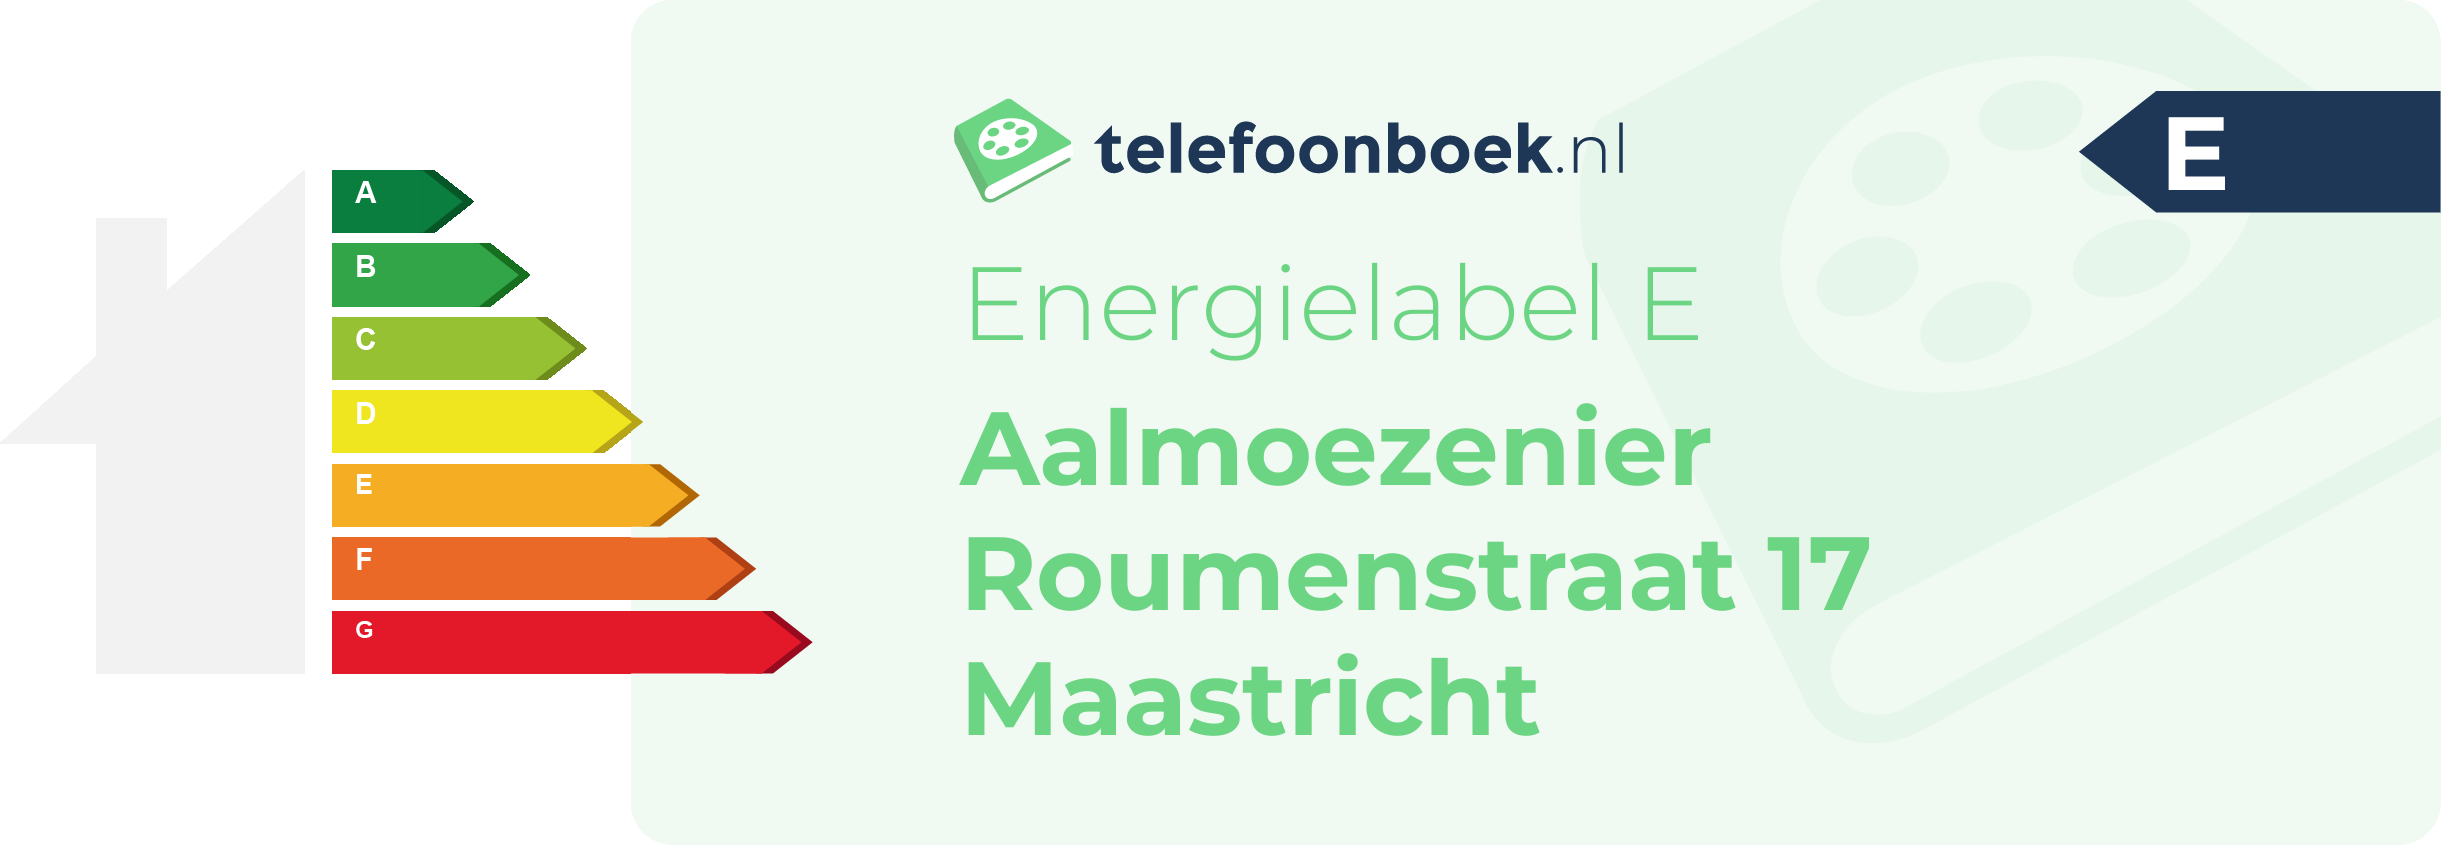 Energielabel Aalmoezenier Roumenstraat 17 Maastricht